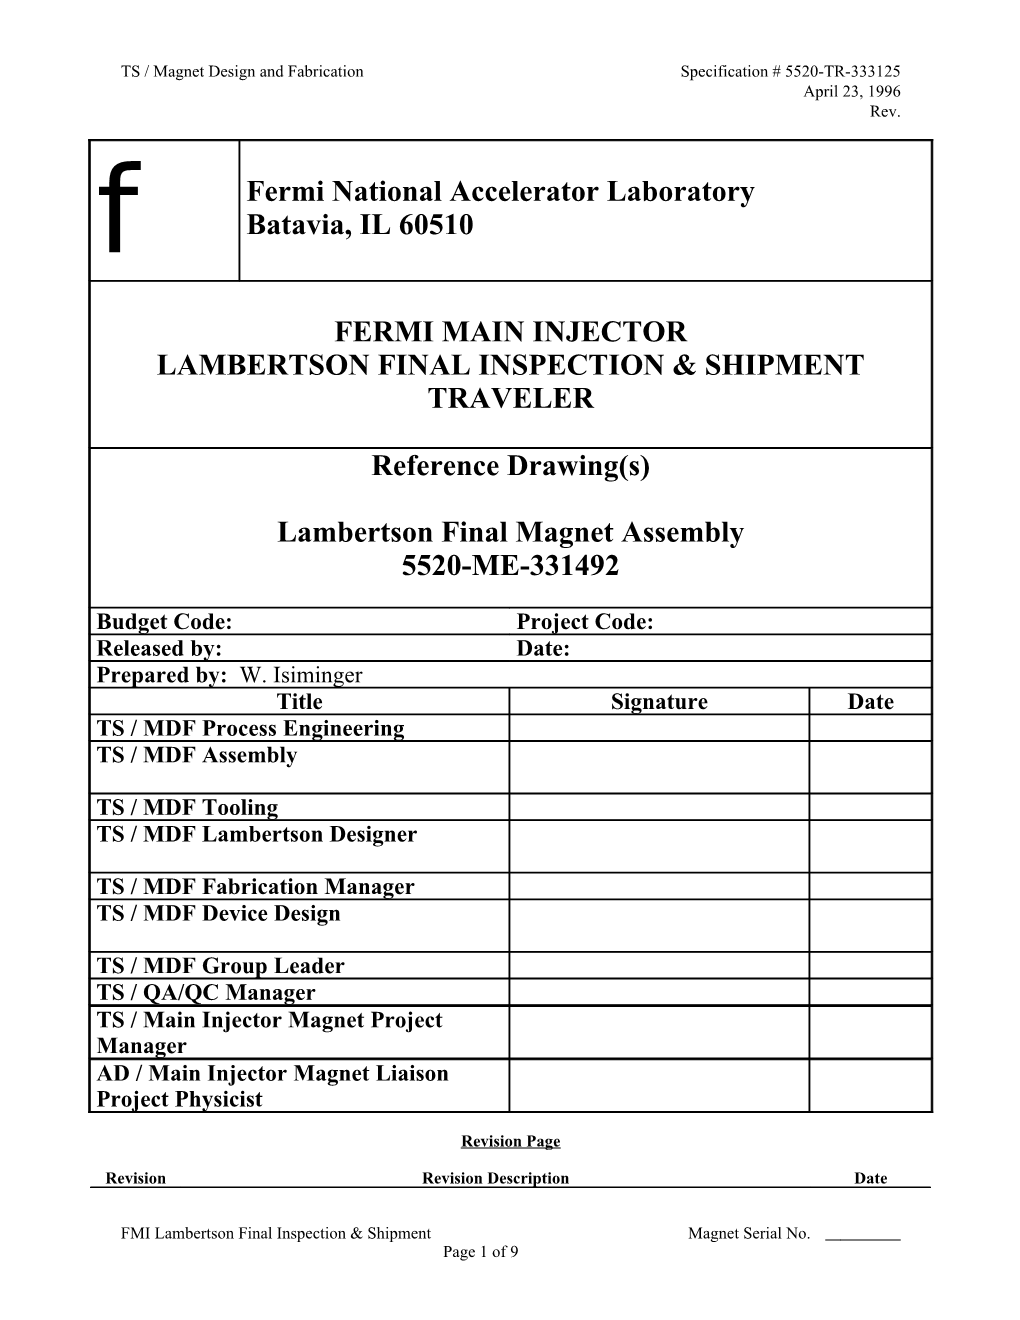 Lambertson Final Inspection & Shipment Traveler